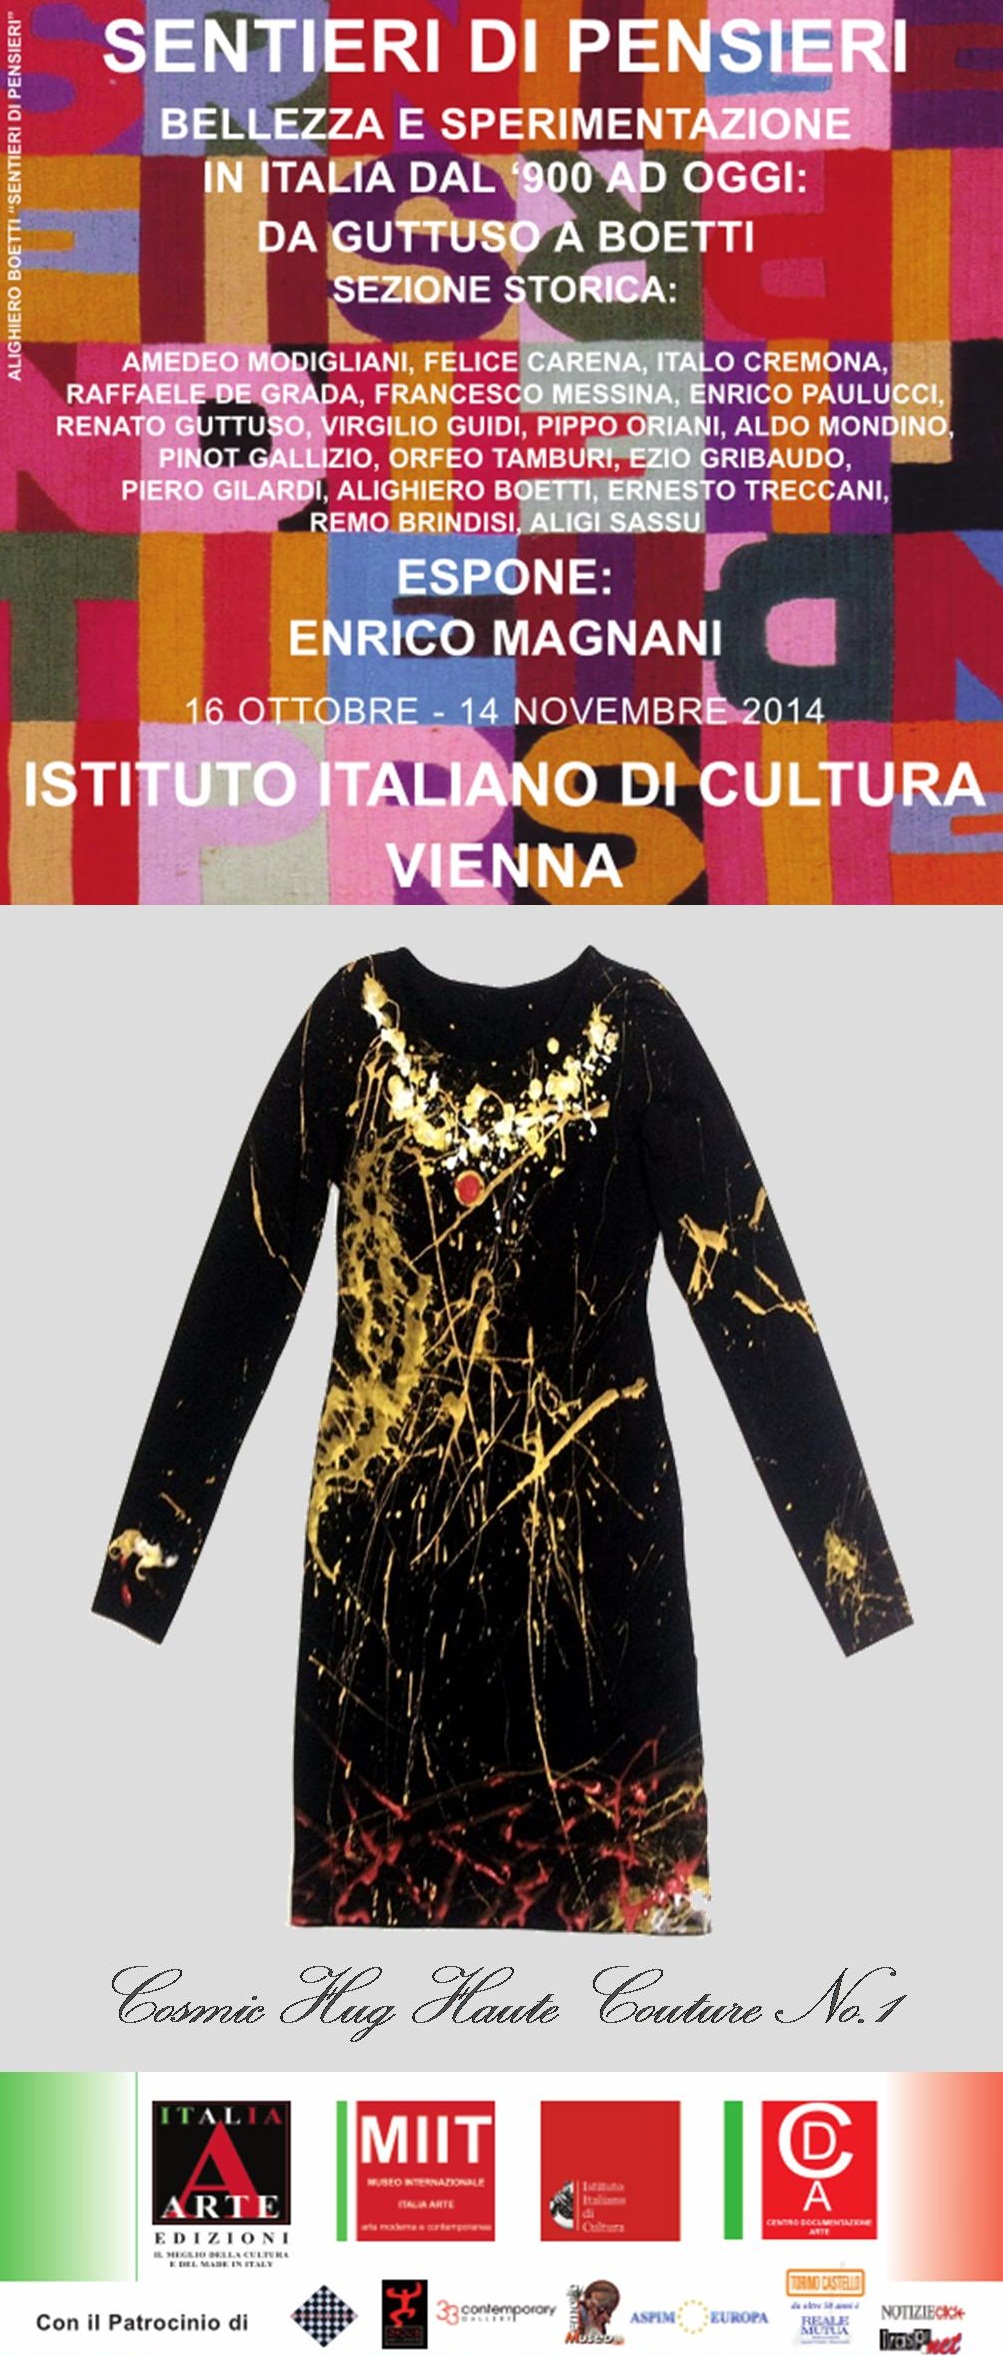 Enrico Magnani, vienna, istituto di cultura, cosmic hug